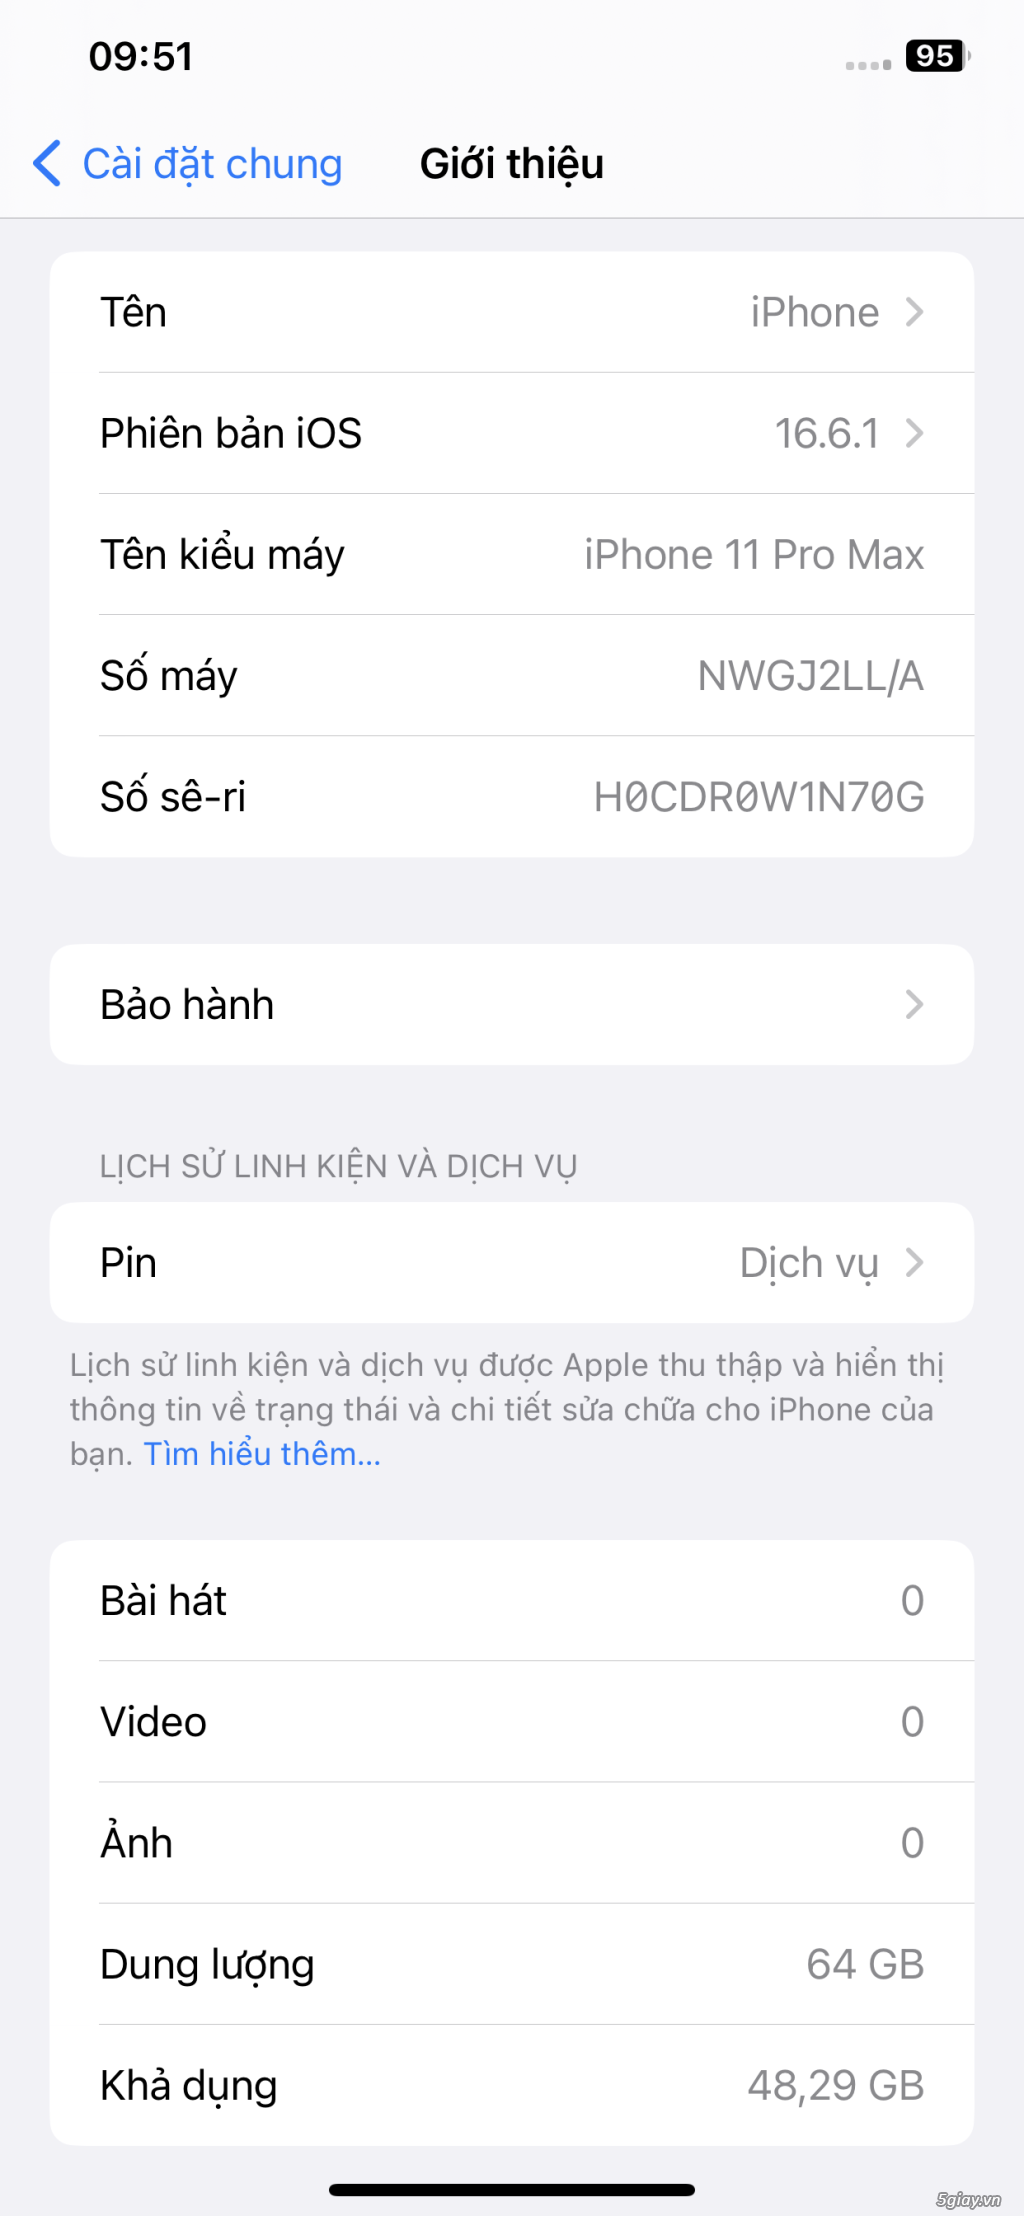 IPHONE 11 PRO MAX LOCK - XANH 64GB ĐÃ FIX NHƯ QUỐC TẾ